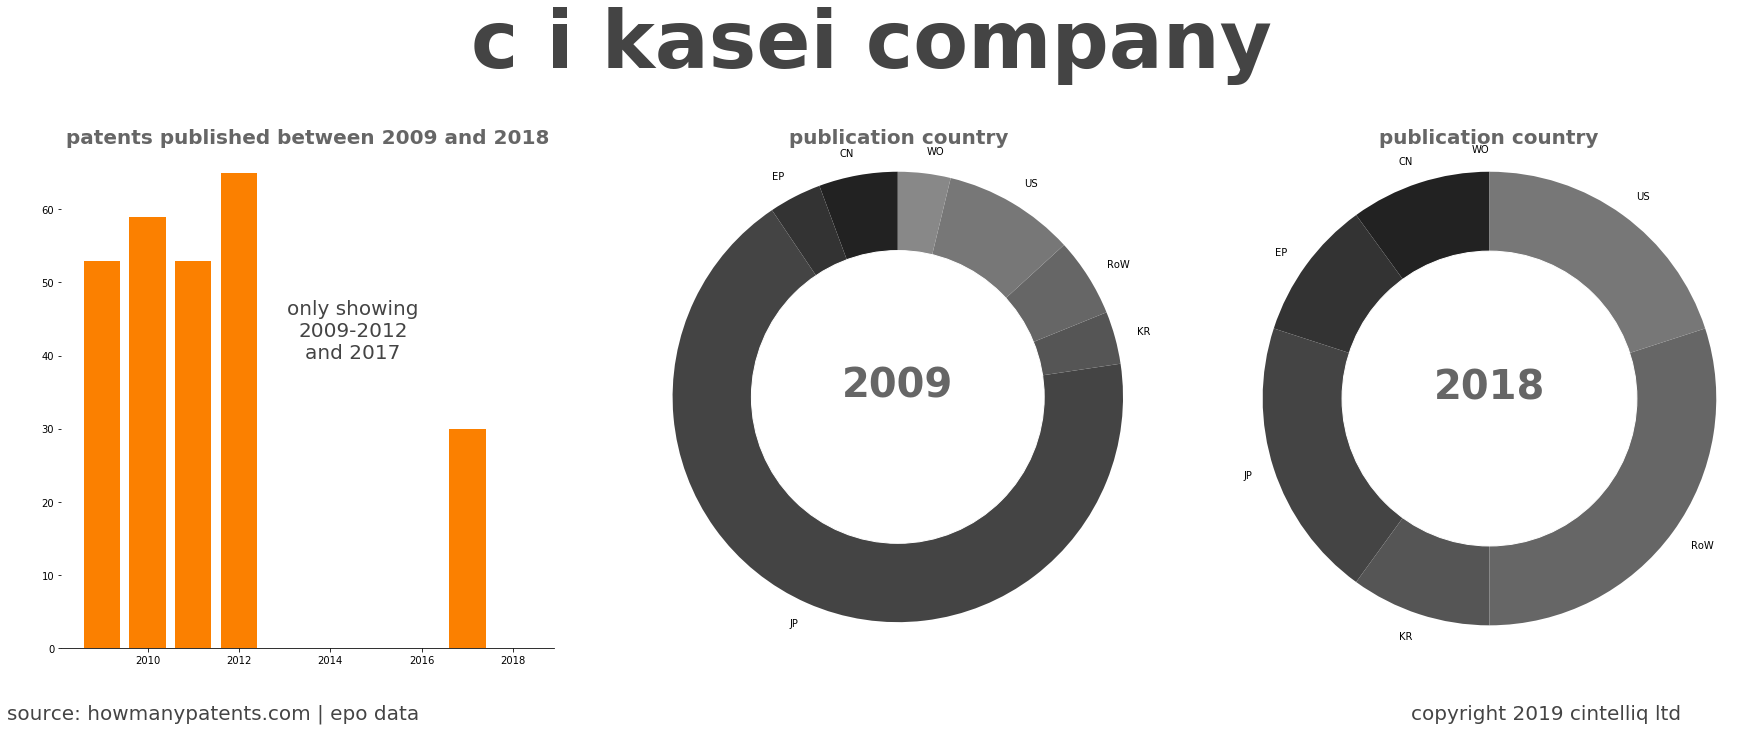 summary of patents for C I Kasei Company